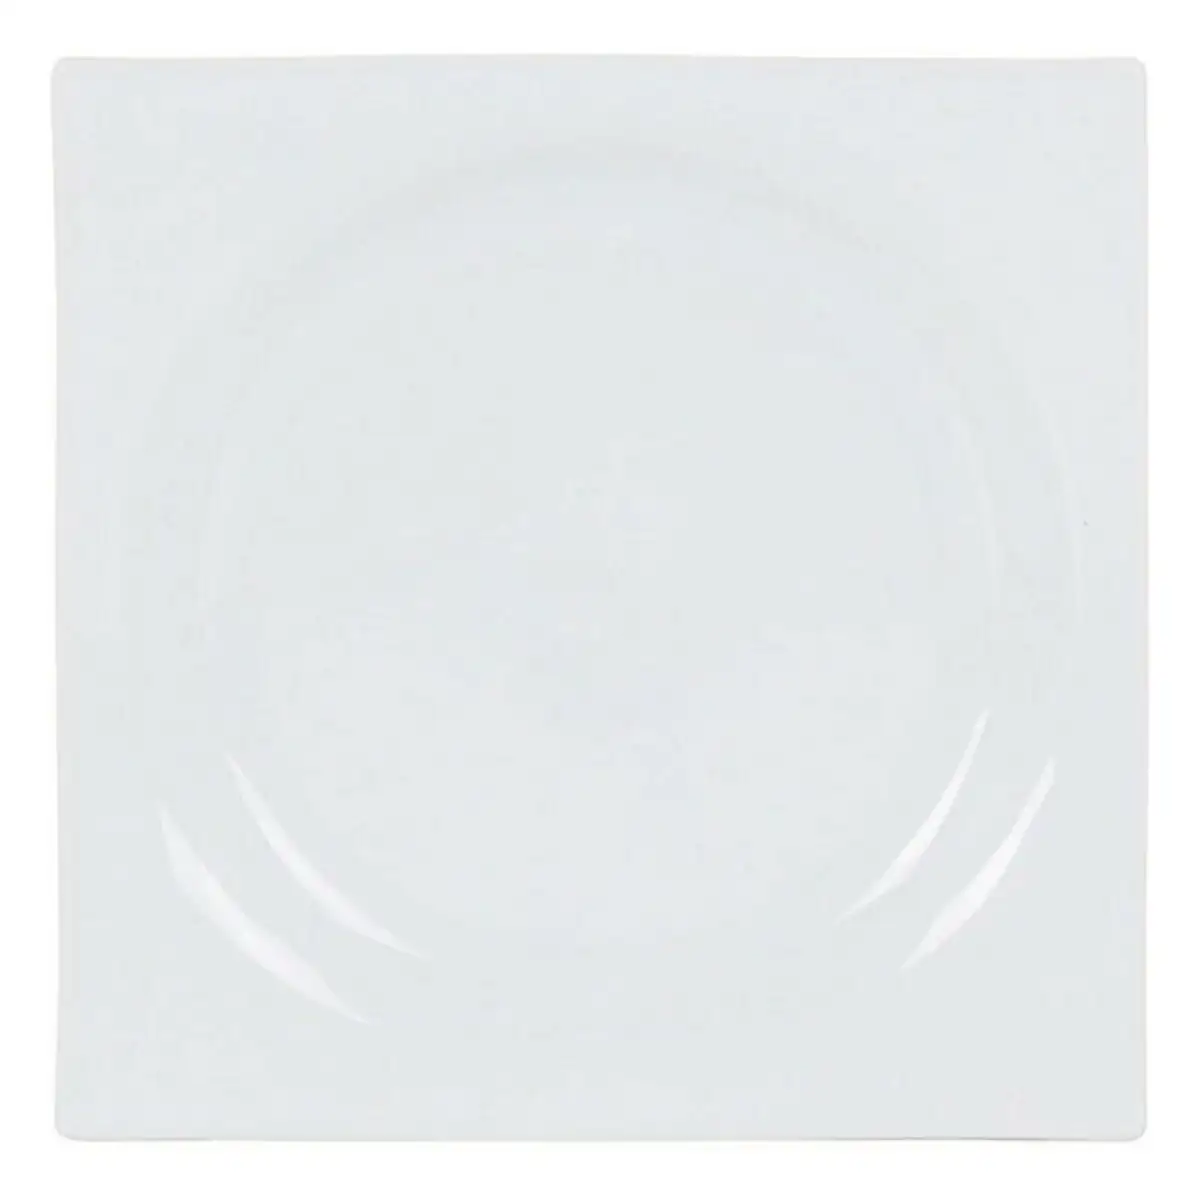 Assiette plate zen porcelaine blanc 24 x 24 x 2 5 cm _6020. DIAYTAR SENEGAL - L'Art de Choisir, l'Art de Se Distinquer. Naviguez à travers notre catalogue et choisissez des produits qui ajoutent une note d'élégance à votre style unique.